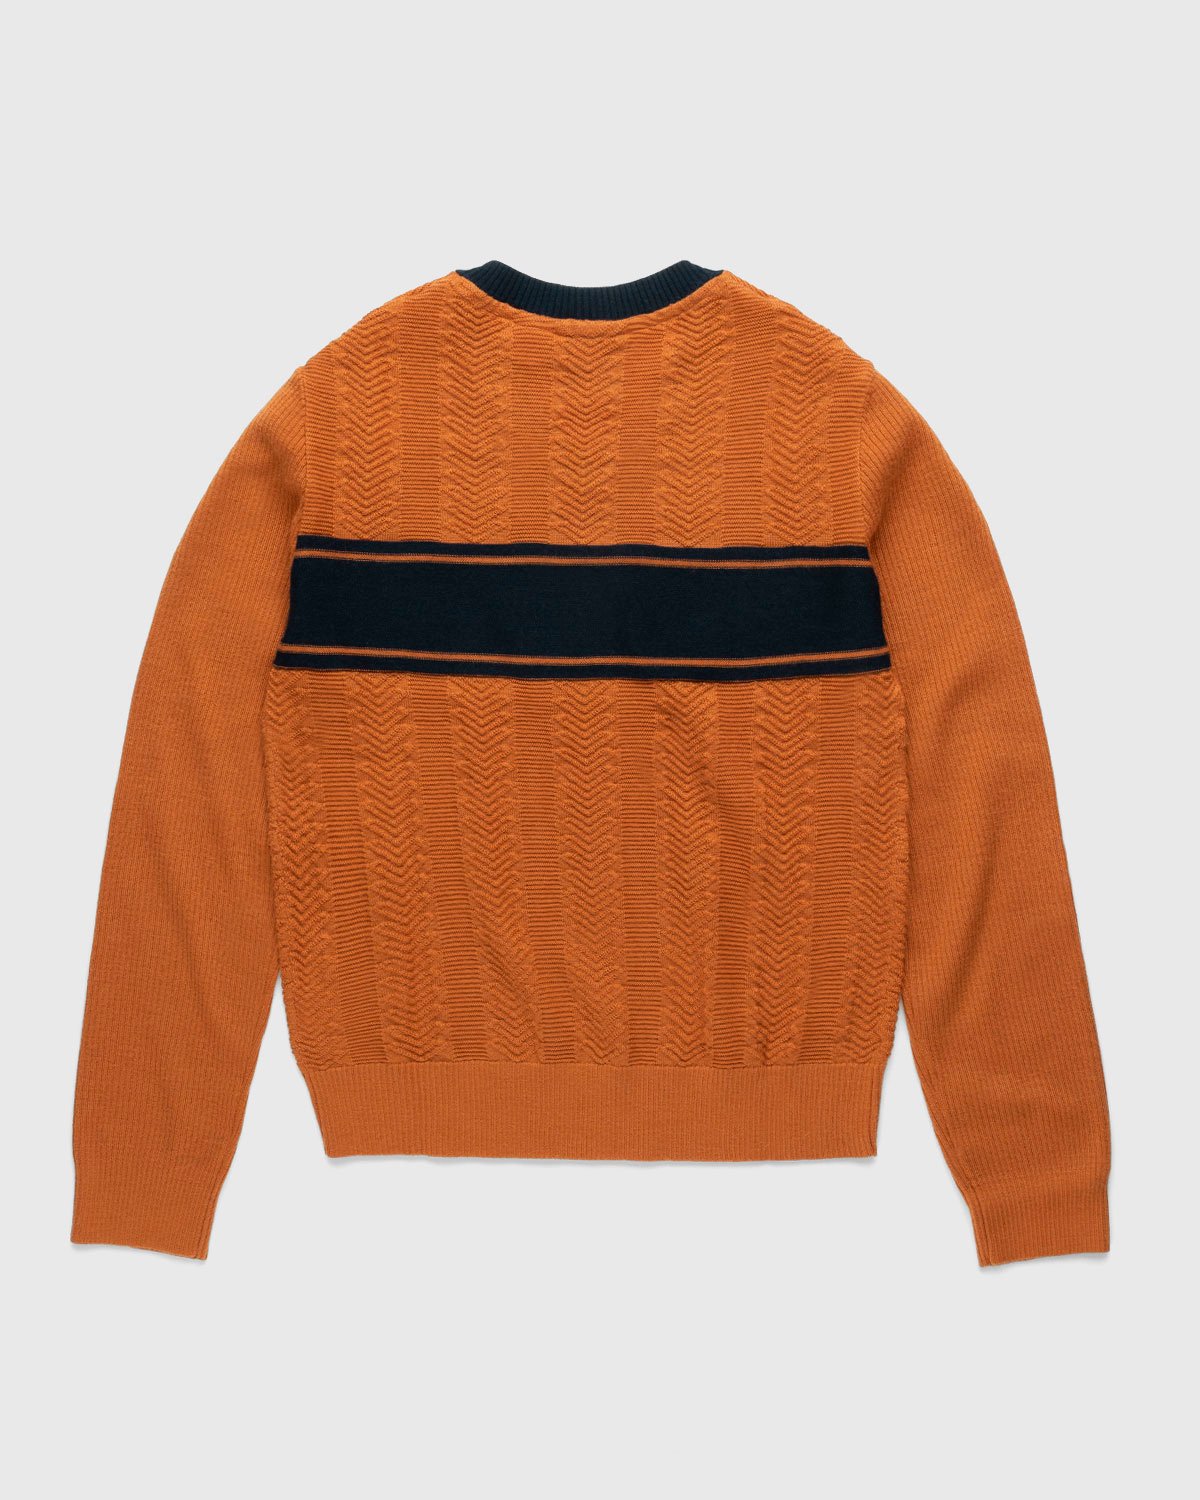 Adidas x Wales Bonner - Knit Longsleeve - Clothing - Orange - Image 2